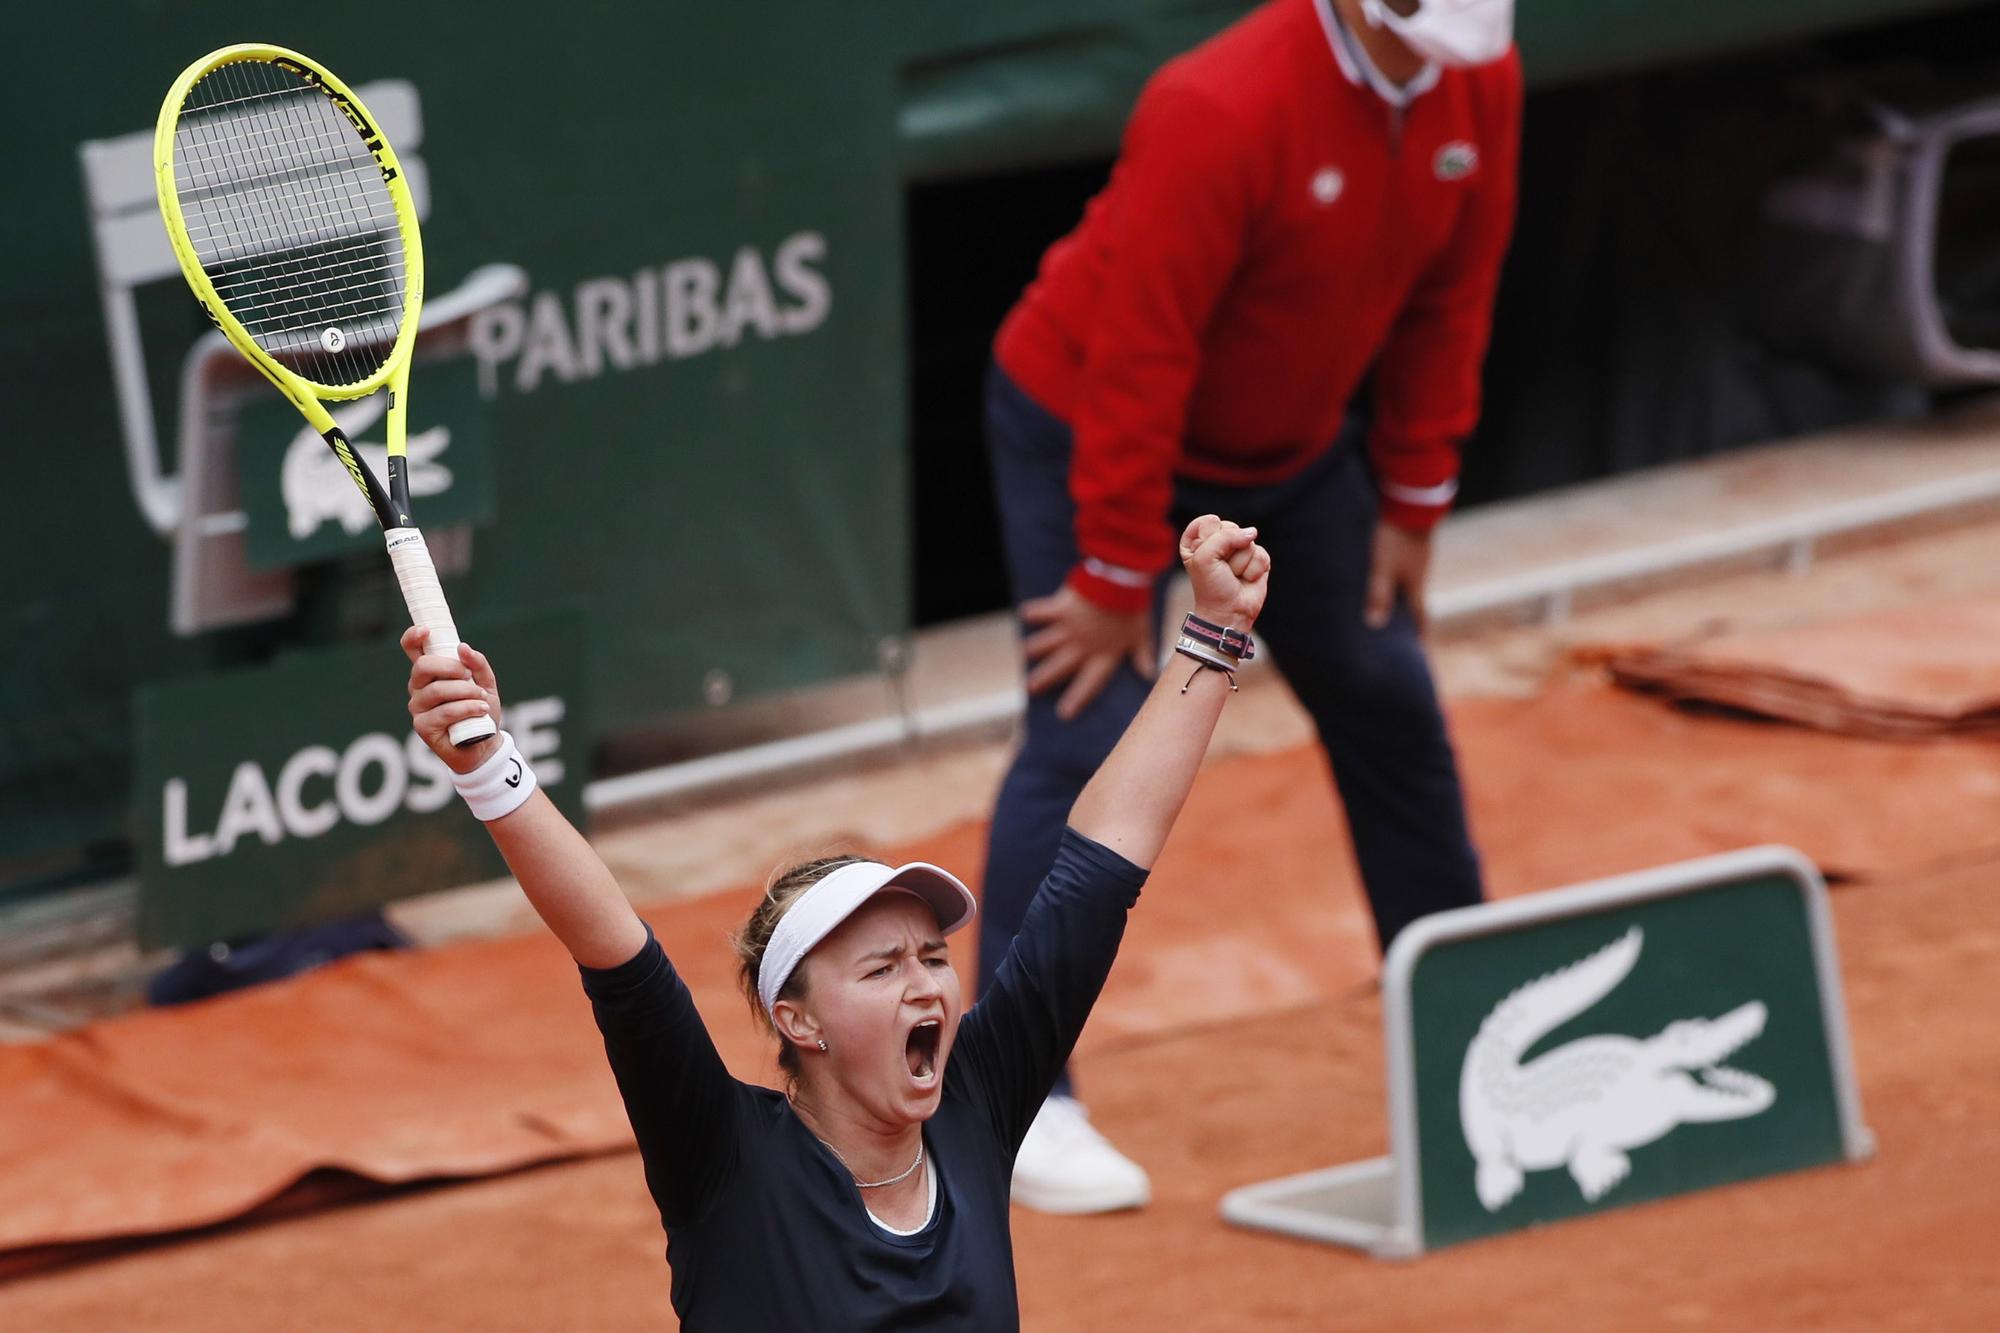 Barbora Krejcikova s'était imposée en double à Roland-Garros en 2018. [REUTERS - Gonzalo Fuentes]